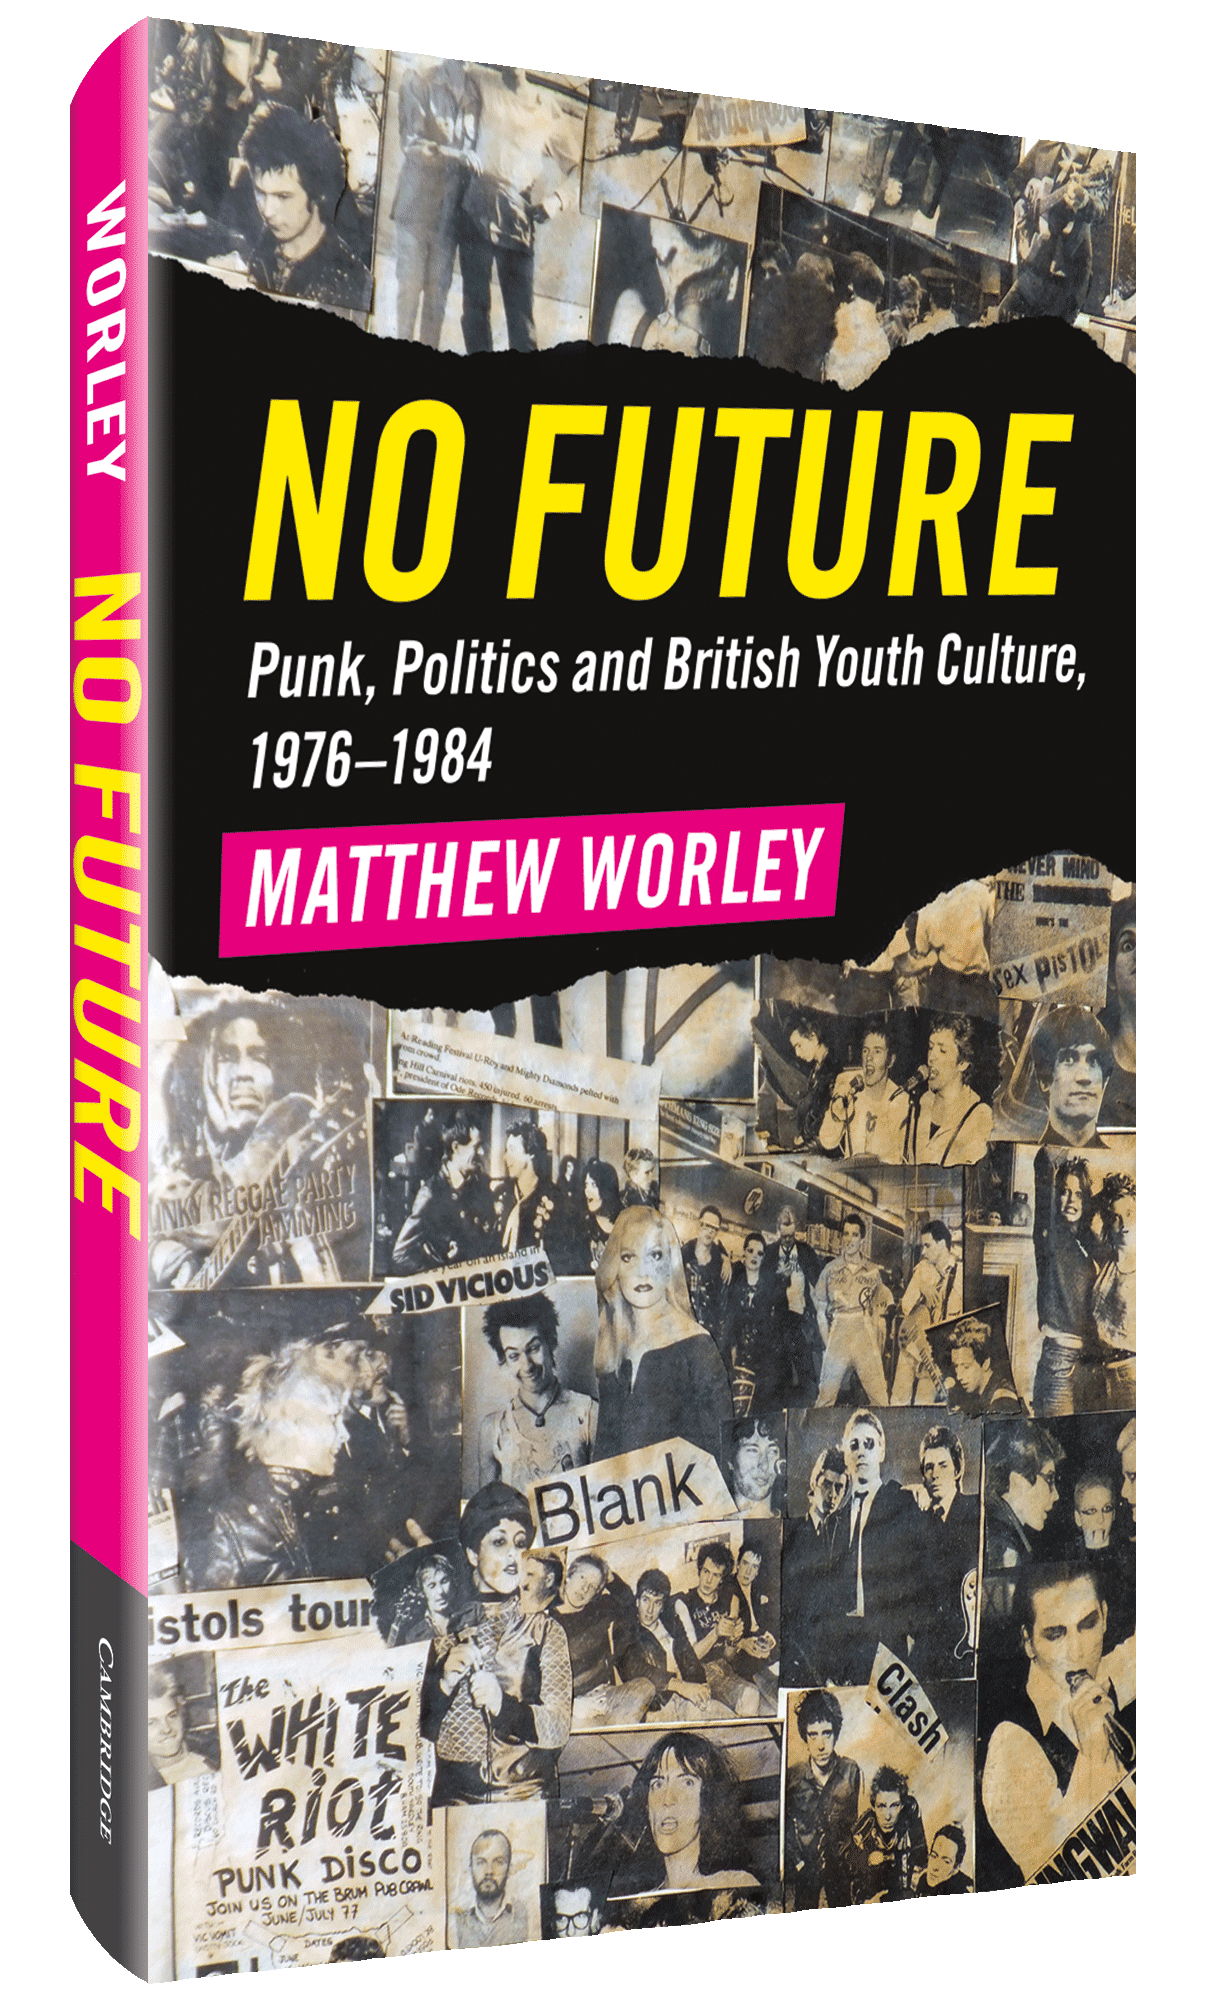 No Future by Matthew Worley